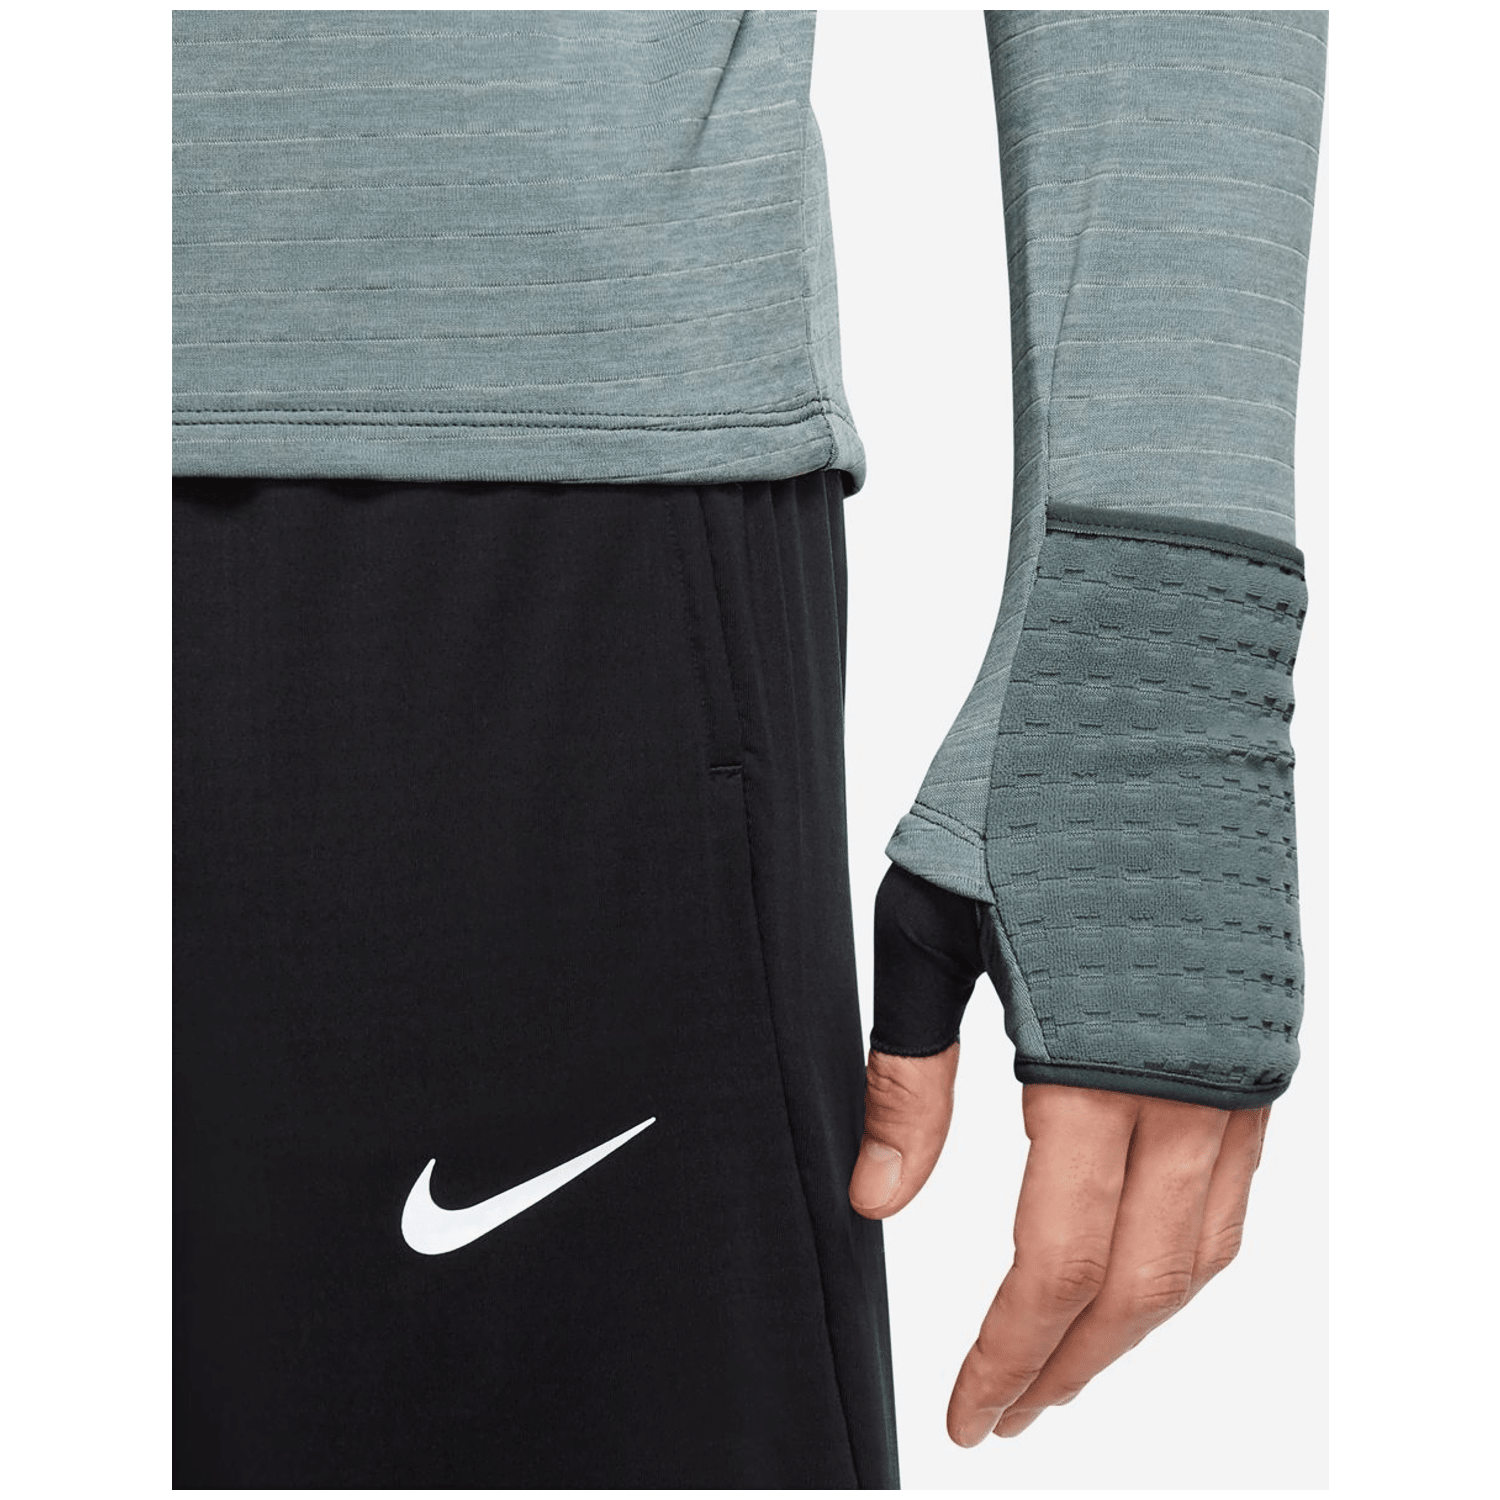 Nike Therma-FIT Repel Element 1/2-Zip Top Herren Sweatshirt